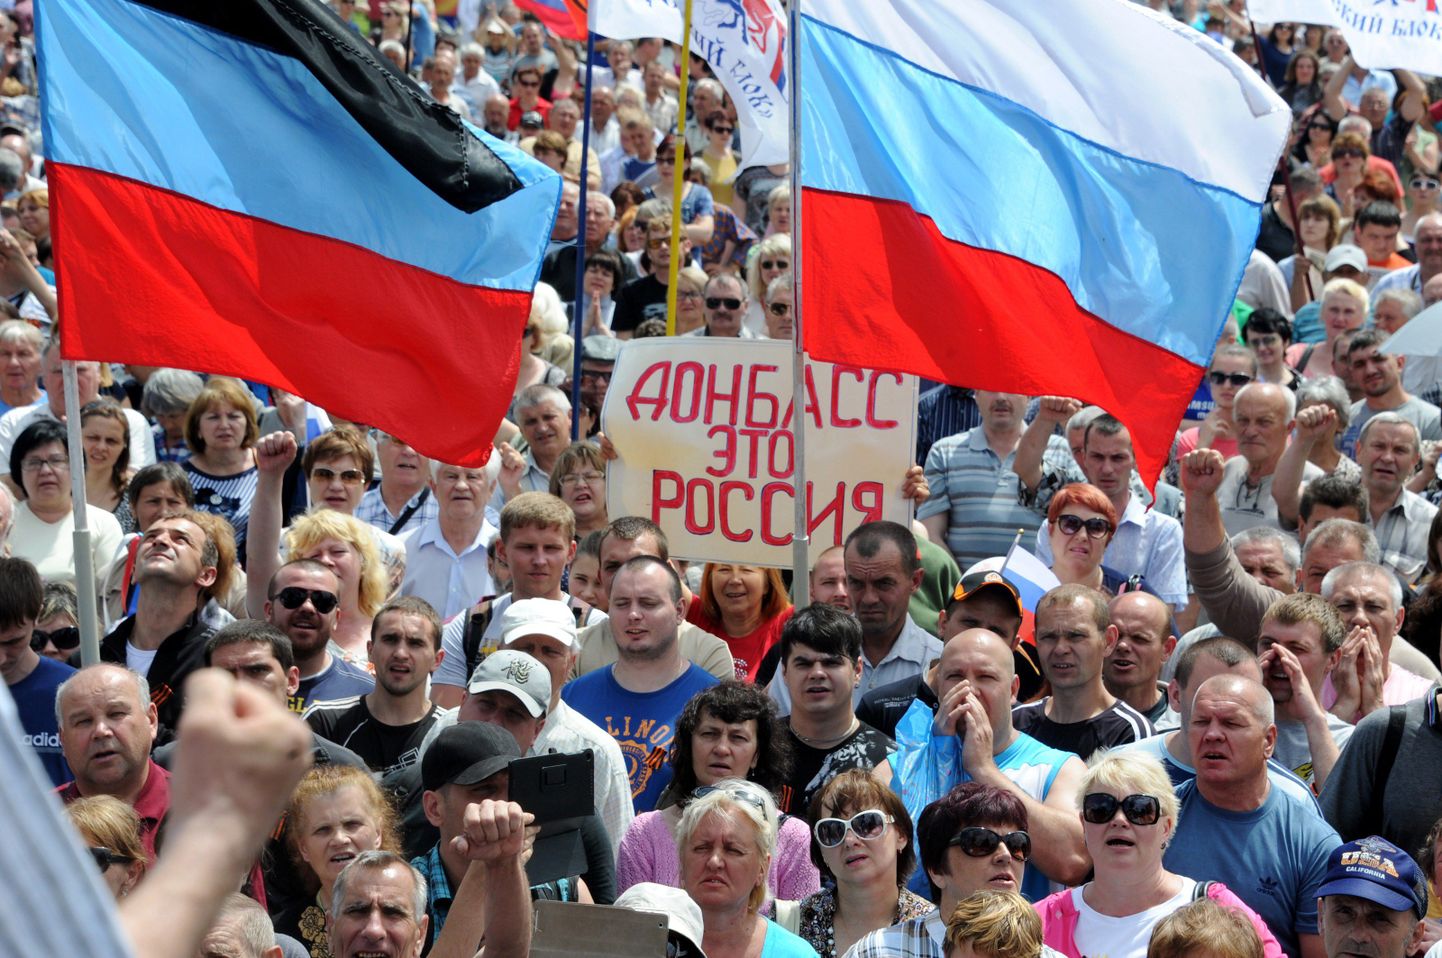 Rahvusäärmuslased, kelle arvates Ukraina peaks kuuluma Venemaale. Plakatil seisab «Donbass on Venemaa»